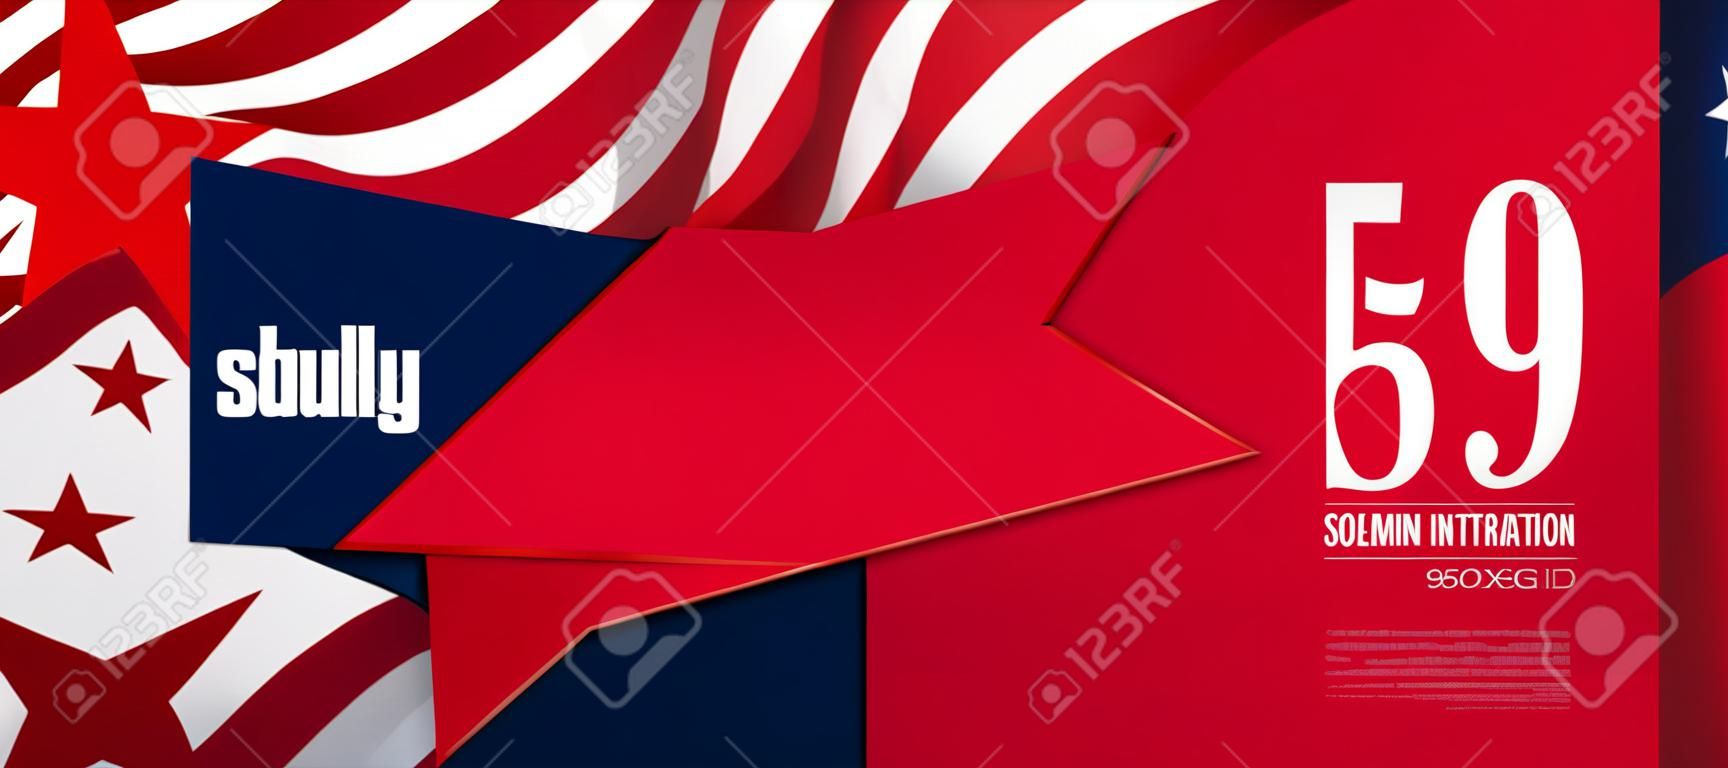 Ilustração solene com elemento de bandeira da América, estrela vermelha, componente de design.